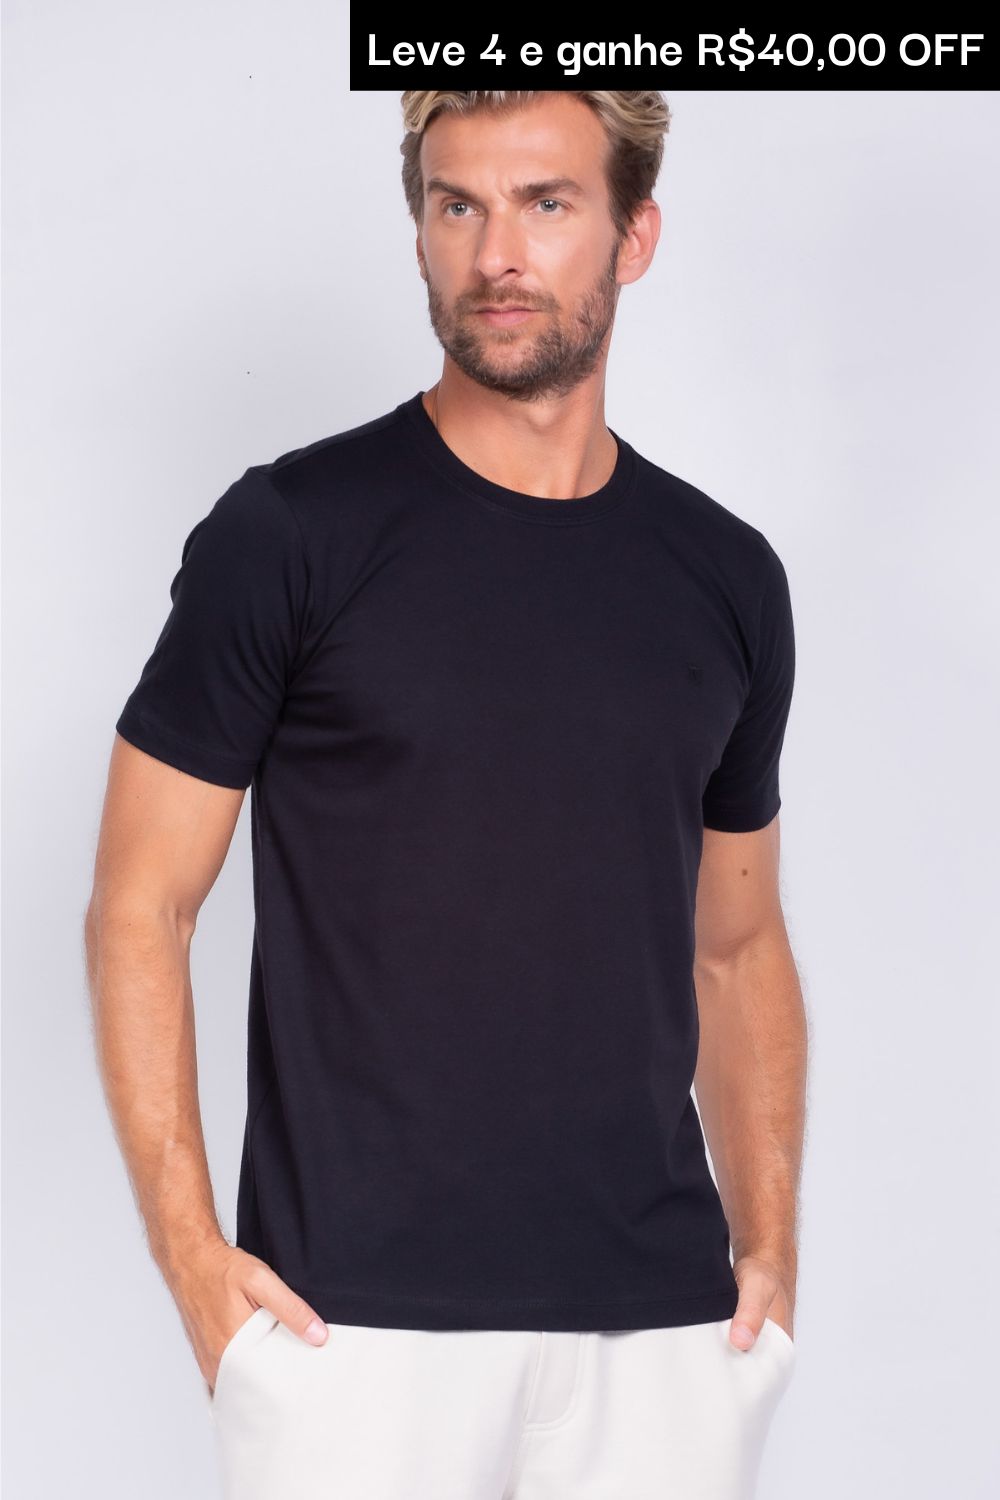 KIT essencial 4x camisetas básicas - Apenas R$59,90 cada